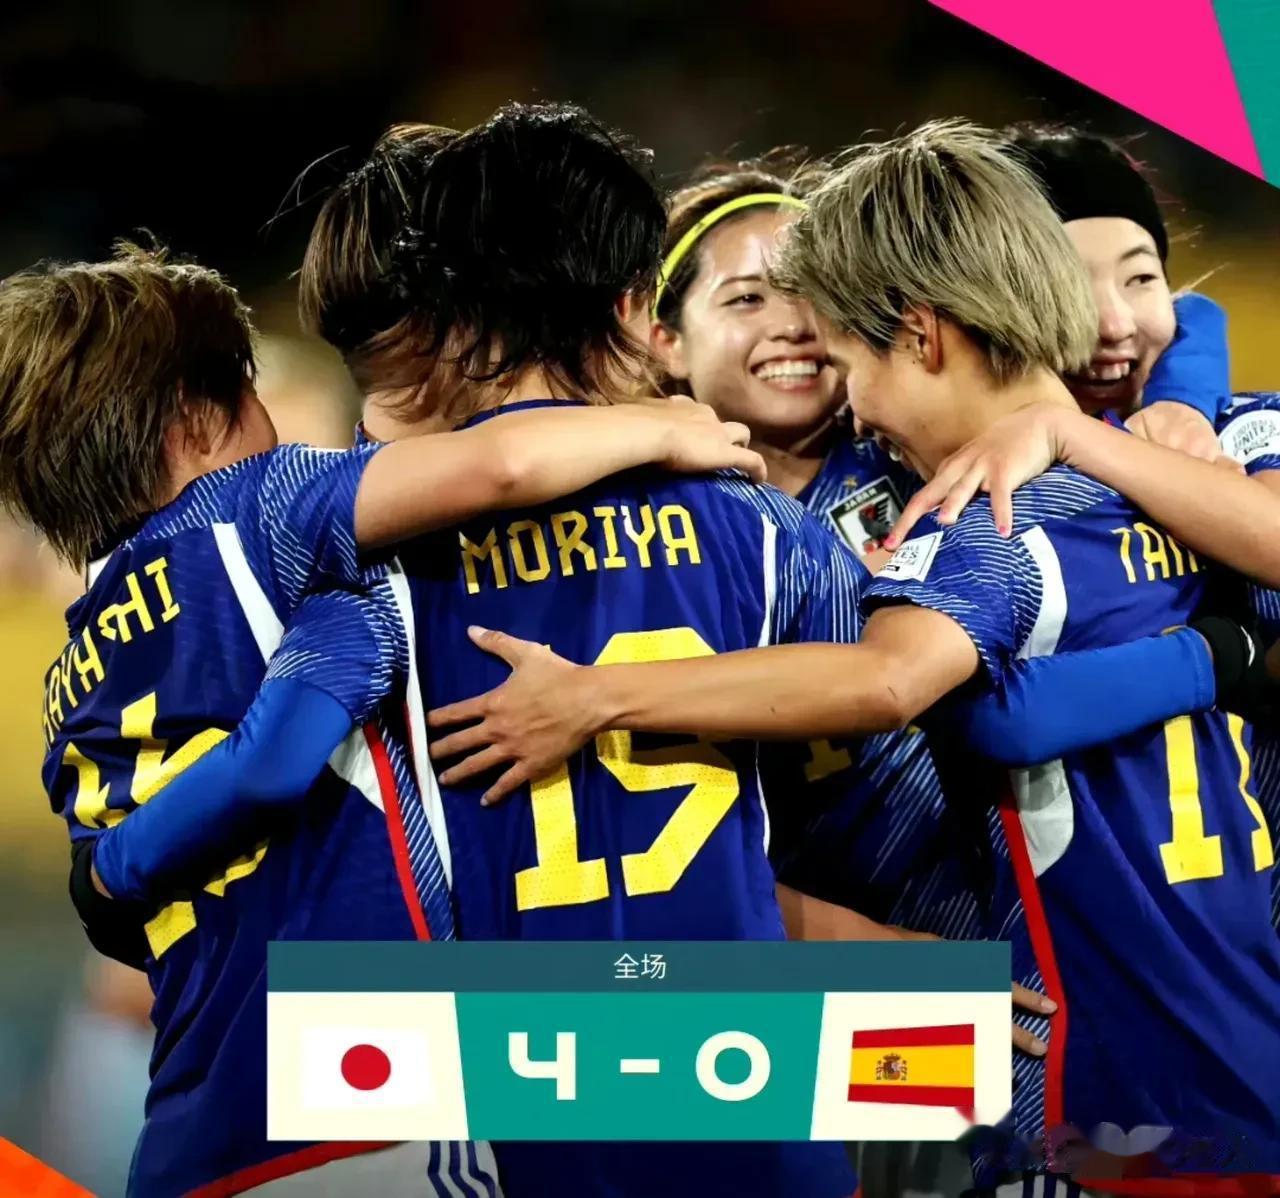 没有不可能，今晚我们女足也有能力3：0胜英格兰！
日本女足已给我们启示，她们以4(2)